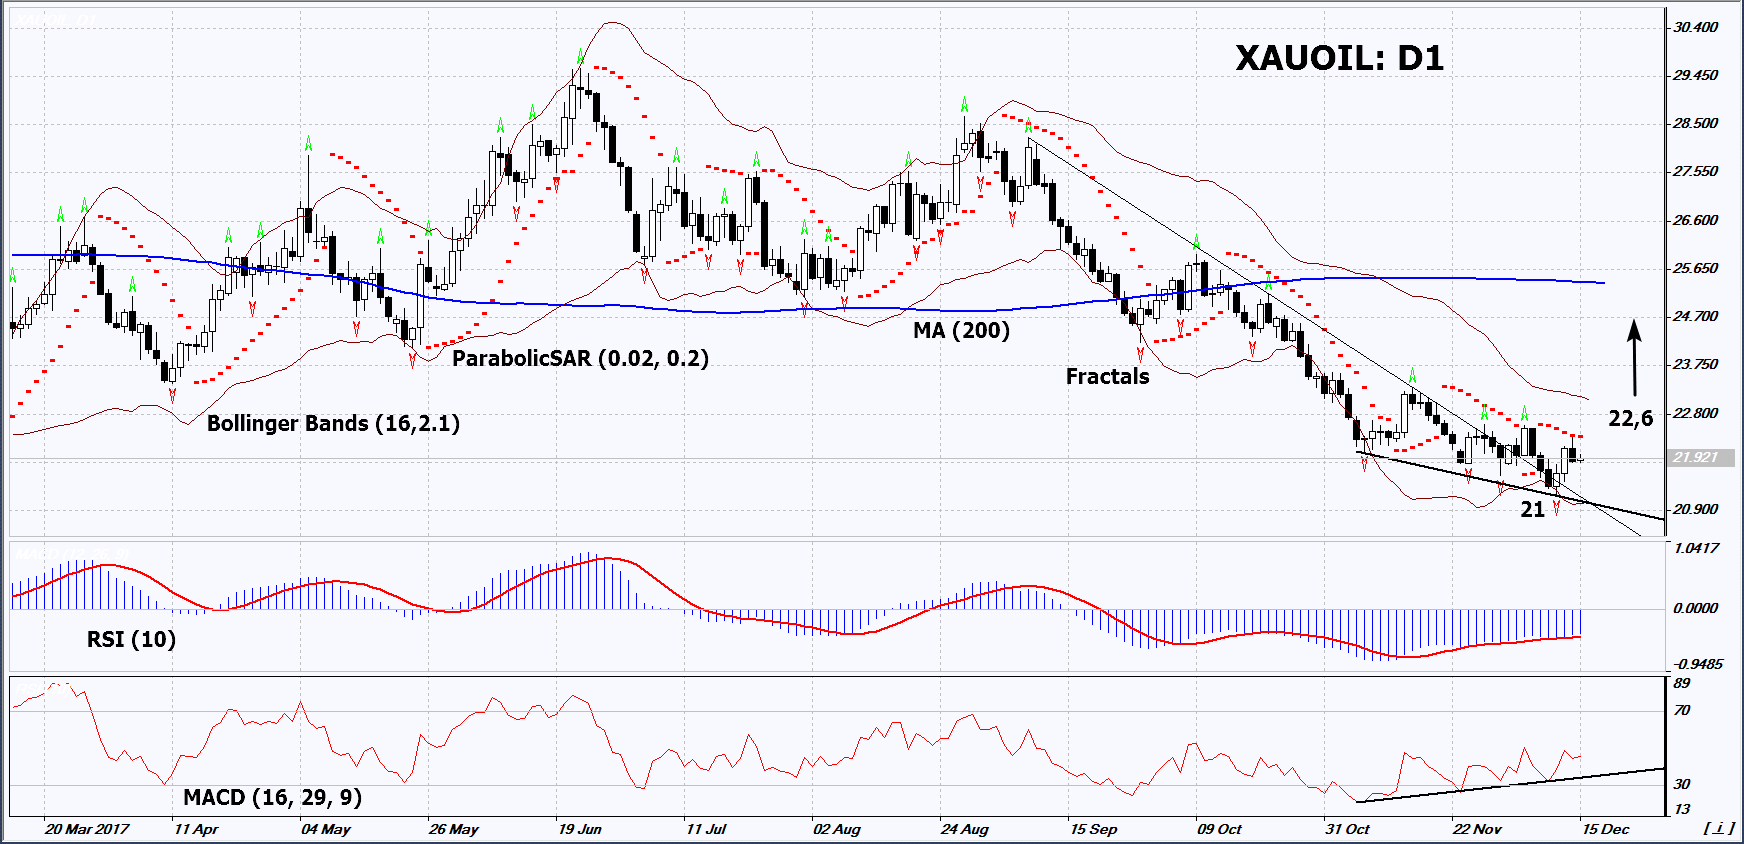 XAU/OIL Daily Chart